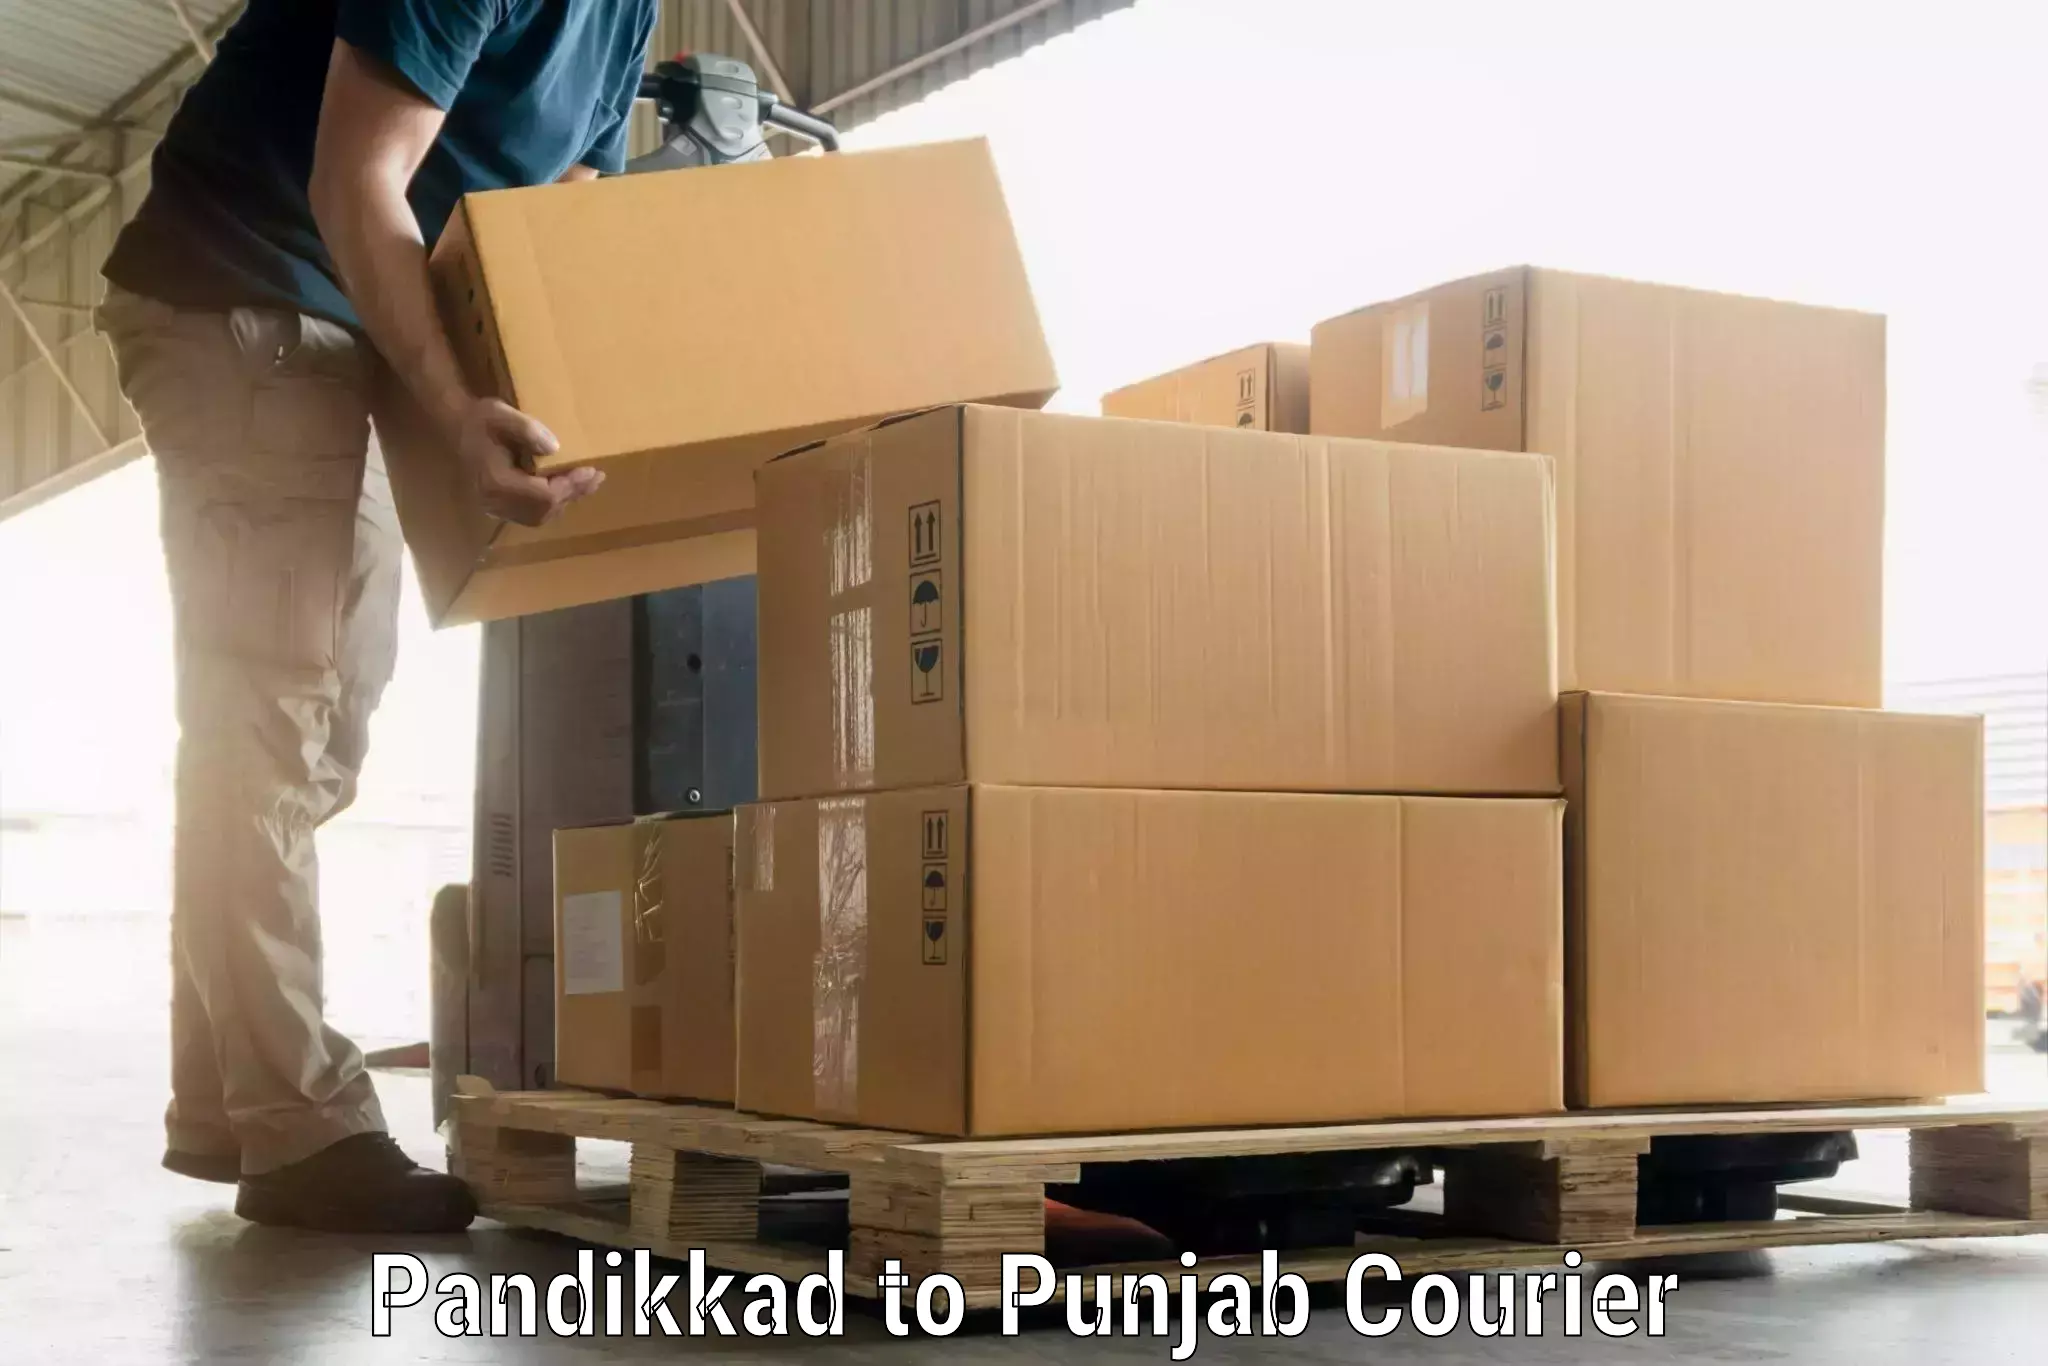 Baggage shipping service Pandikkad to Zirakpur